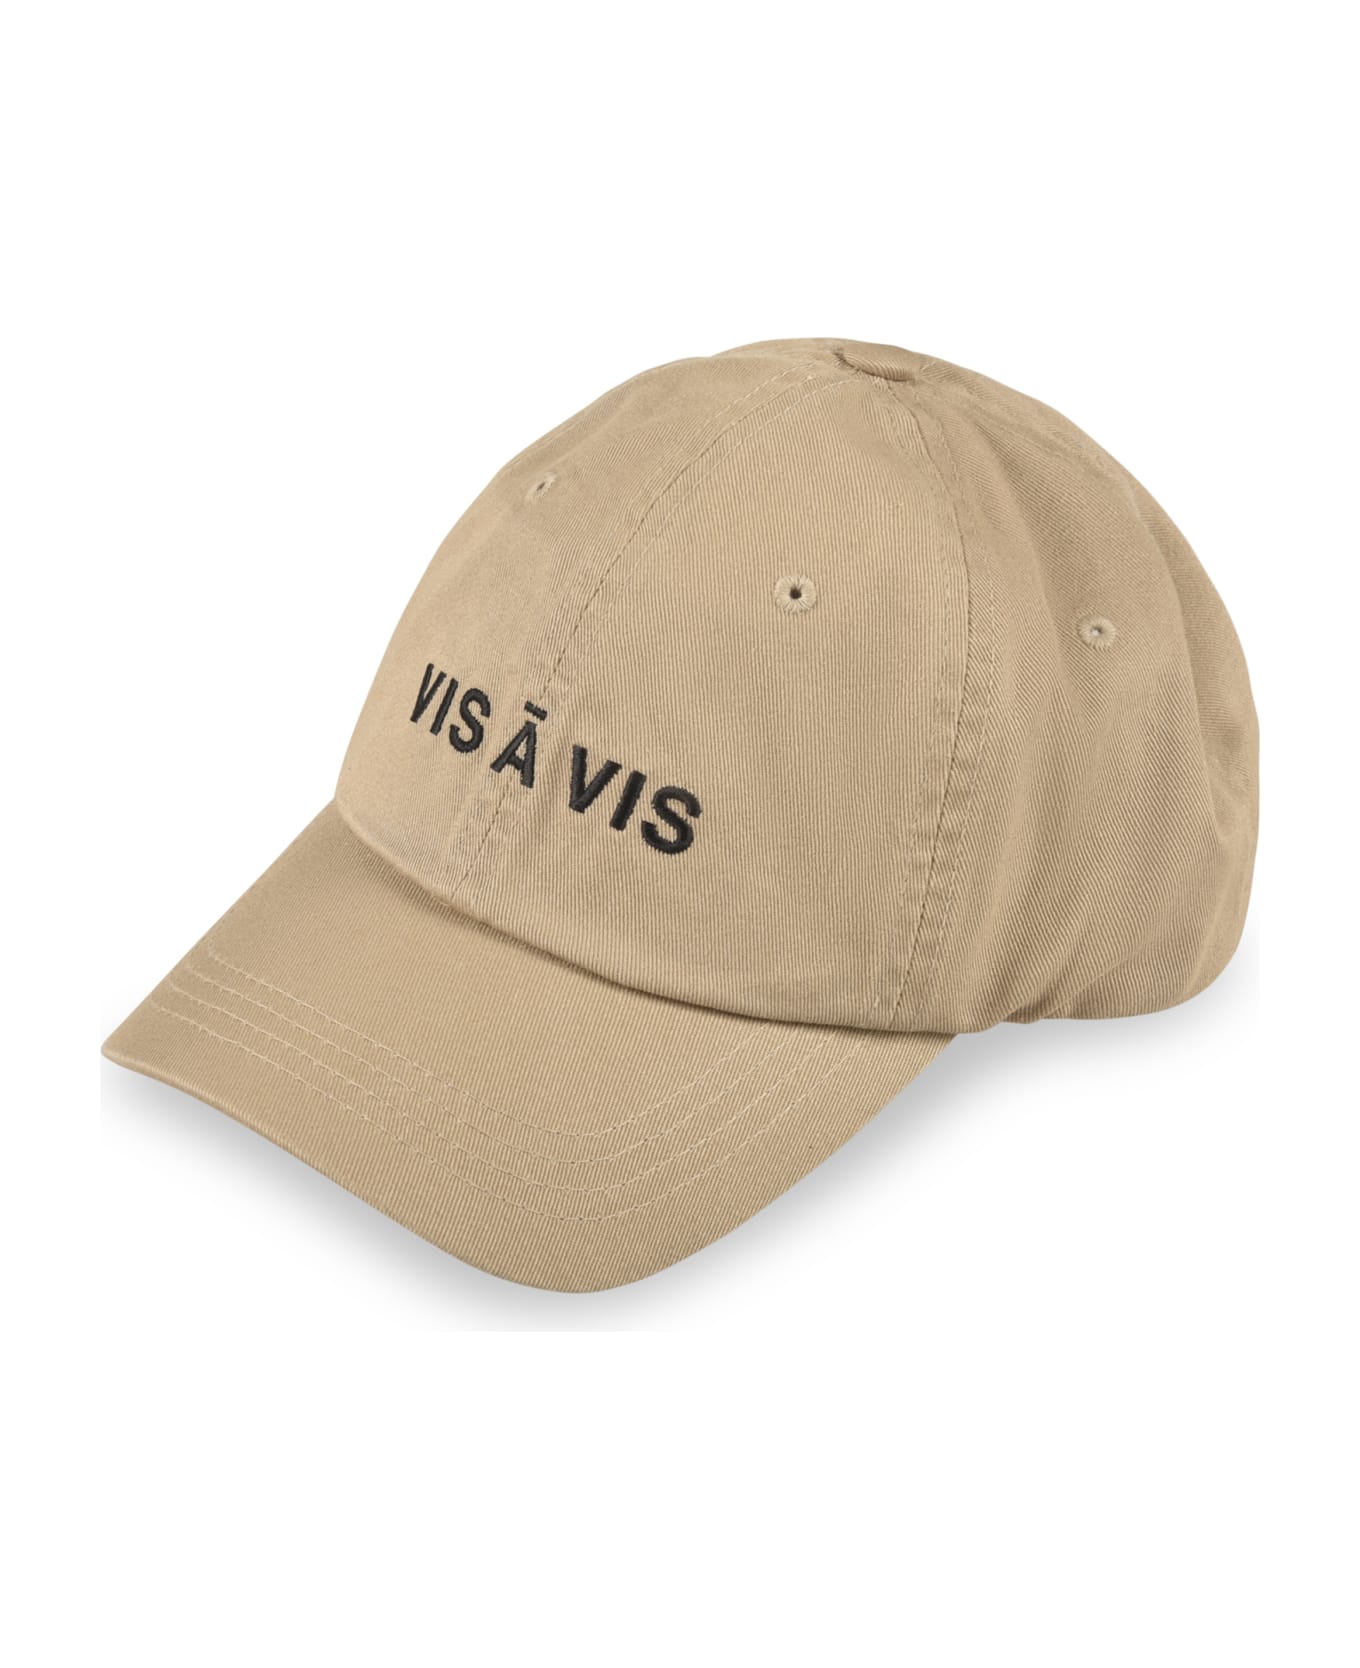 VIS A VIS Logo Baseball Cap - Beige